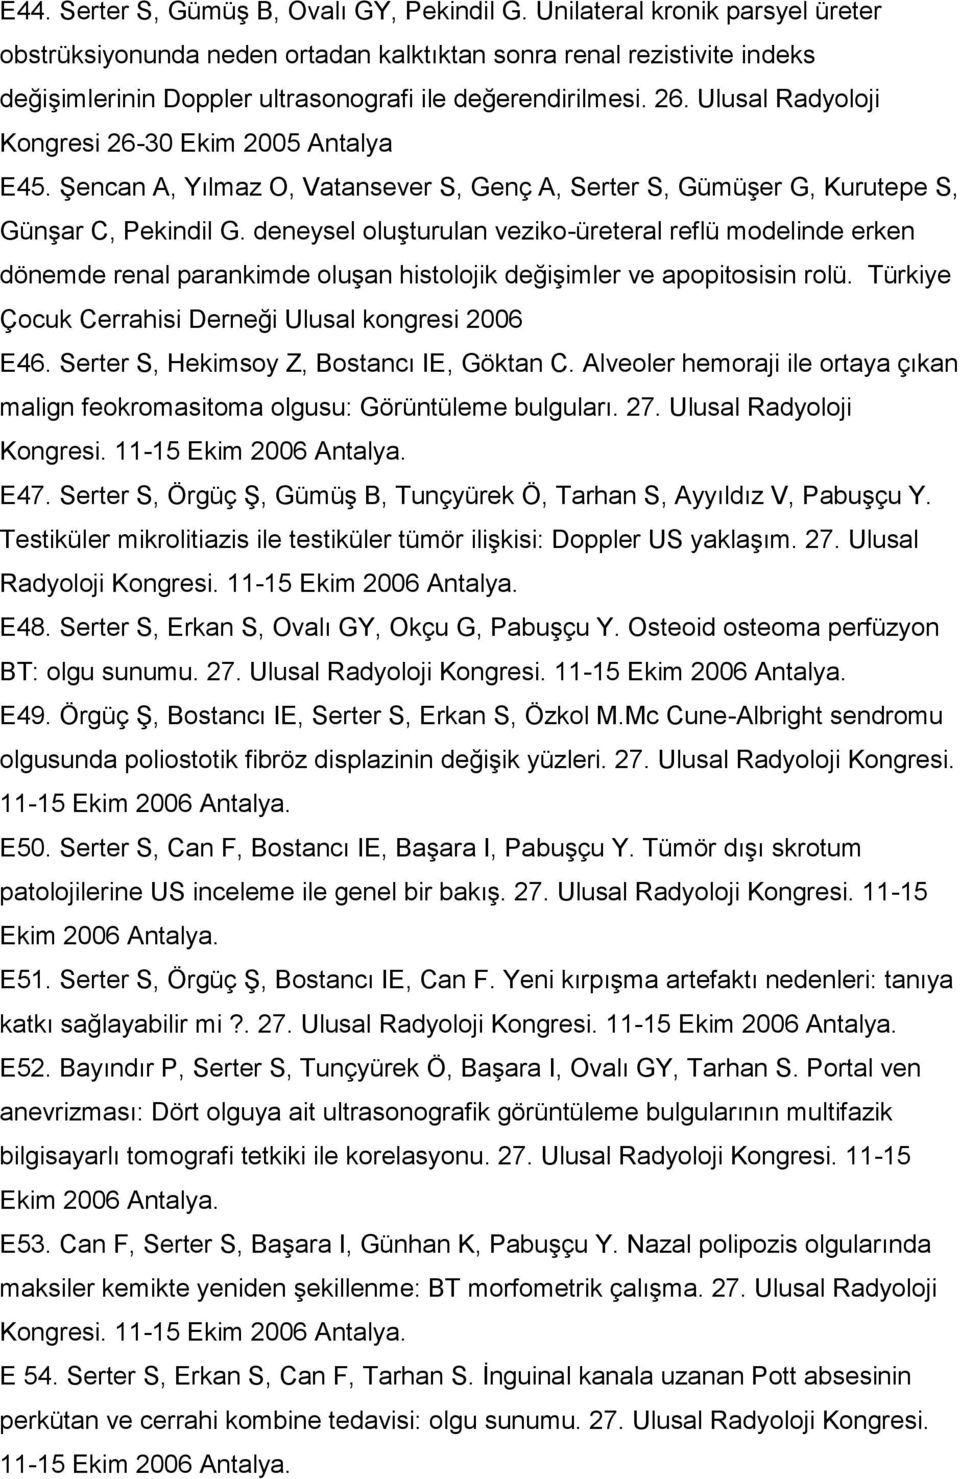 Ulusal Radyoloji Kongresi 26-30 Ekim 2005 Antalya E45. Şencan A, Yılmaz O, Vatansever S, Genç A, Serter S, Gümüşer G, Kurutepe S, Günşar C, Pekindil G.